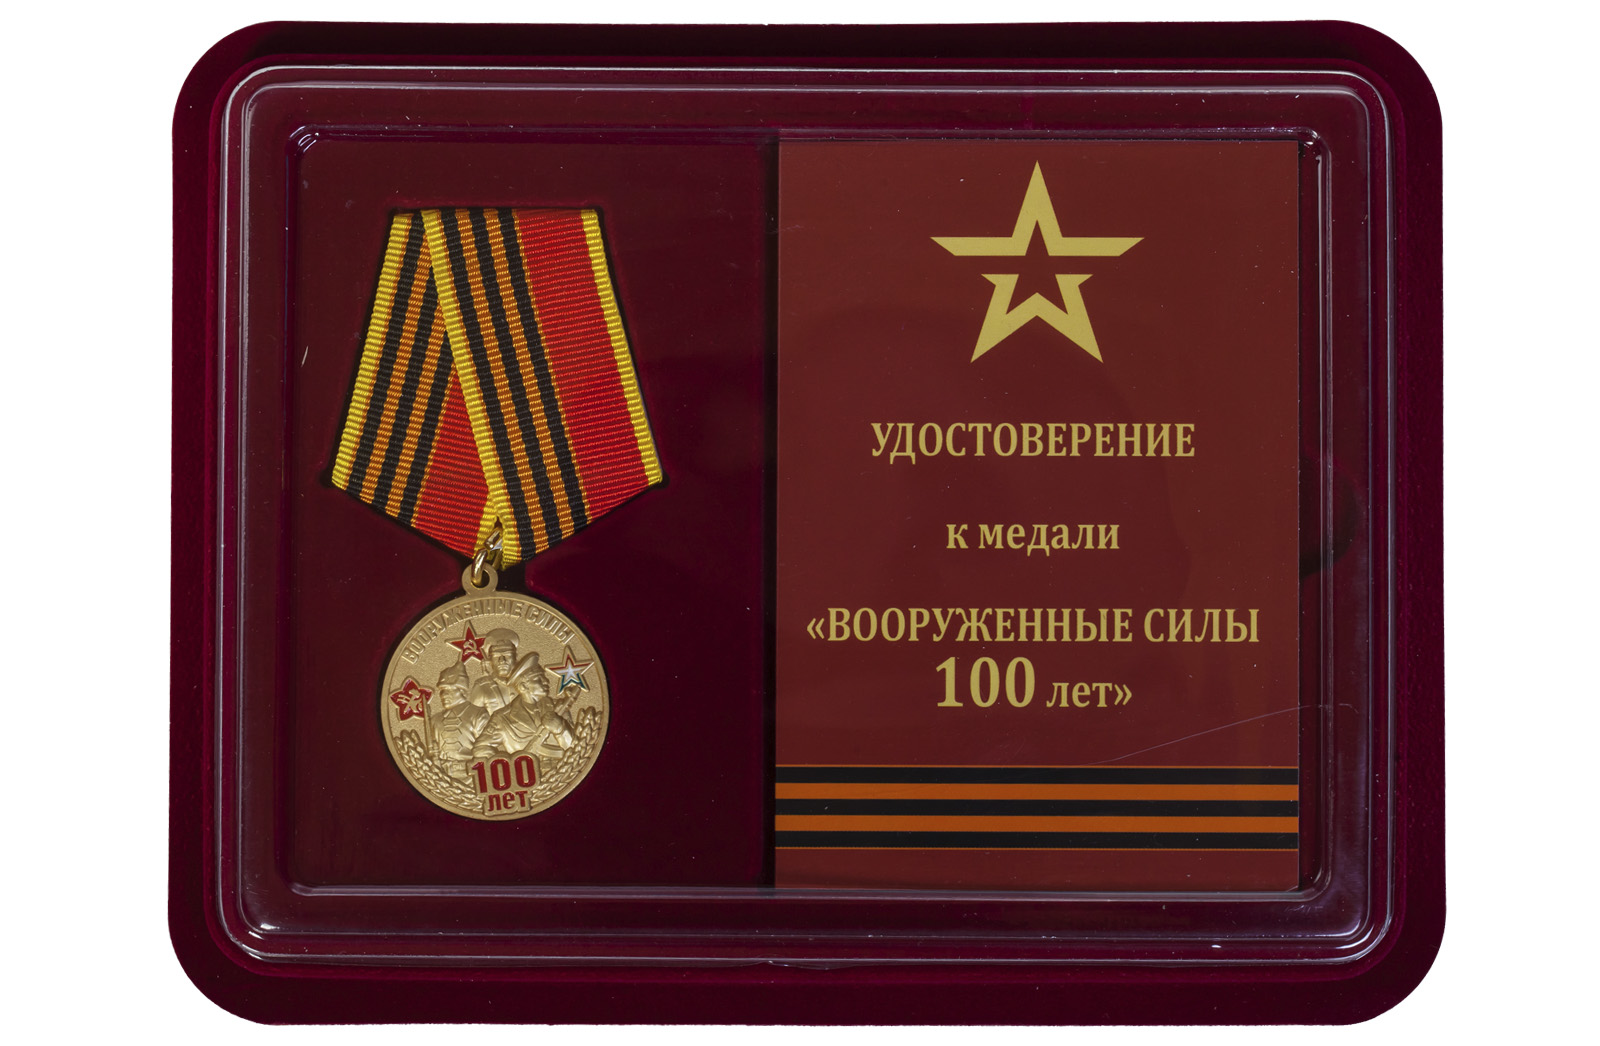 Купить памятную медаль 100-летие Вооруженных сил с доставкой